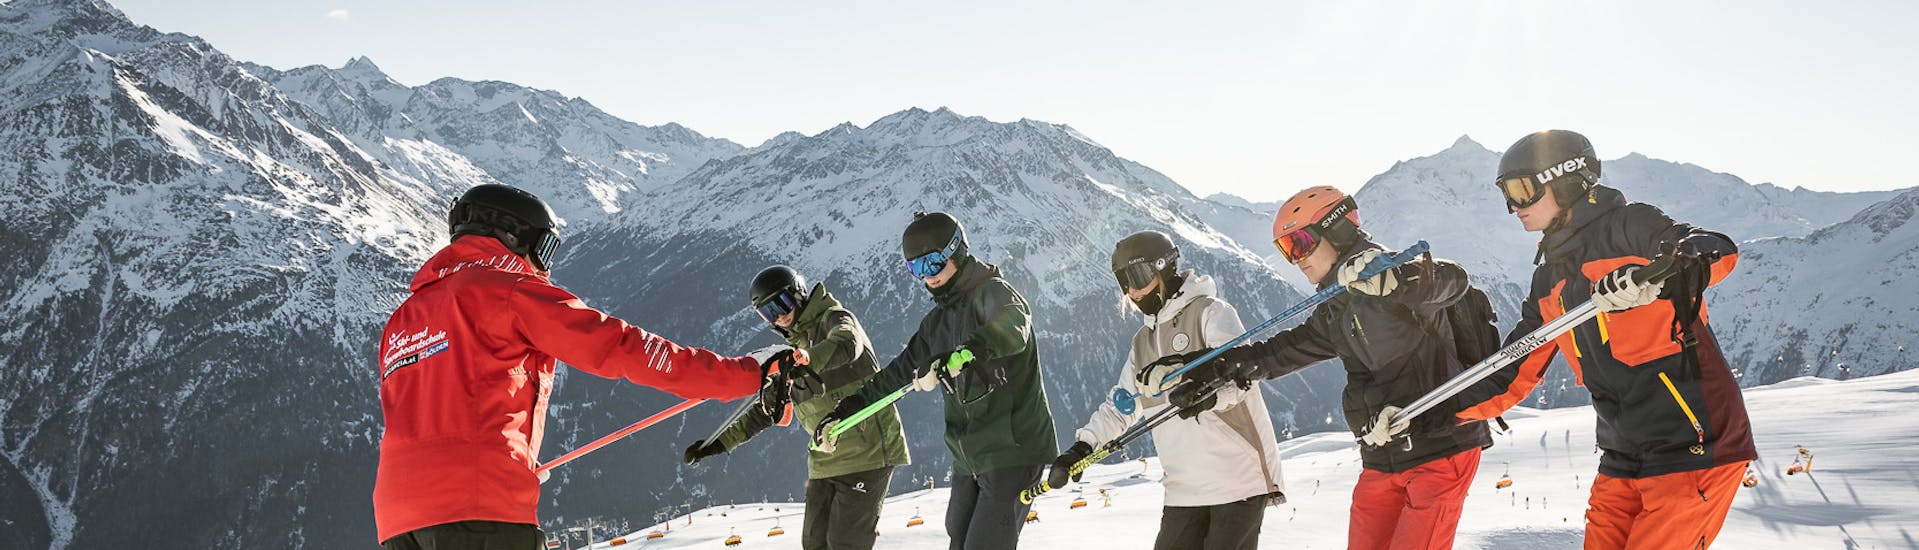 Skilessen voor volwassenen (vanaf 16 jaar) van alle niveaus.